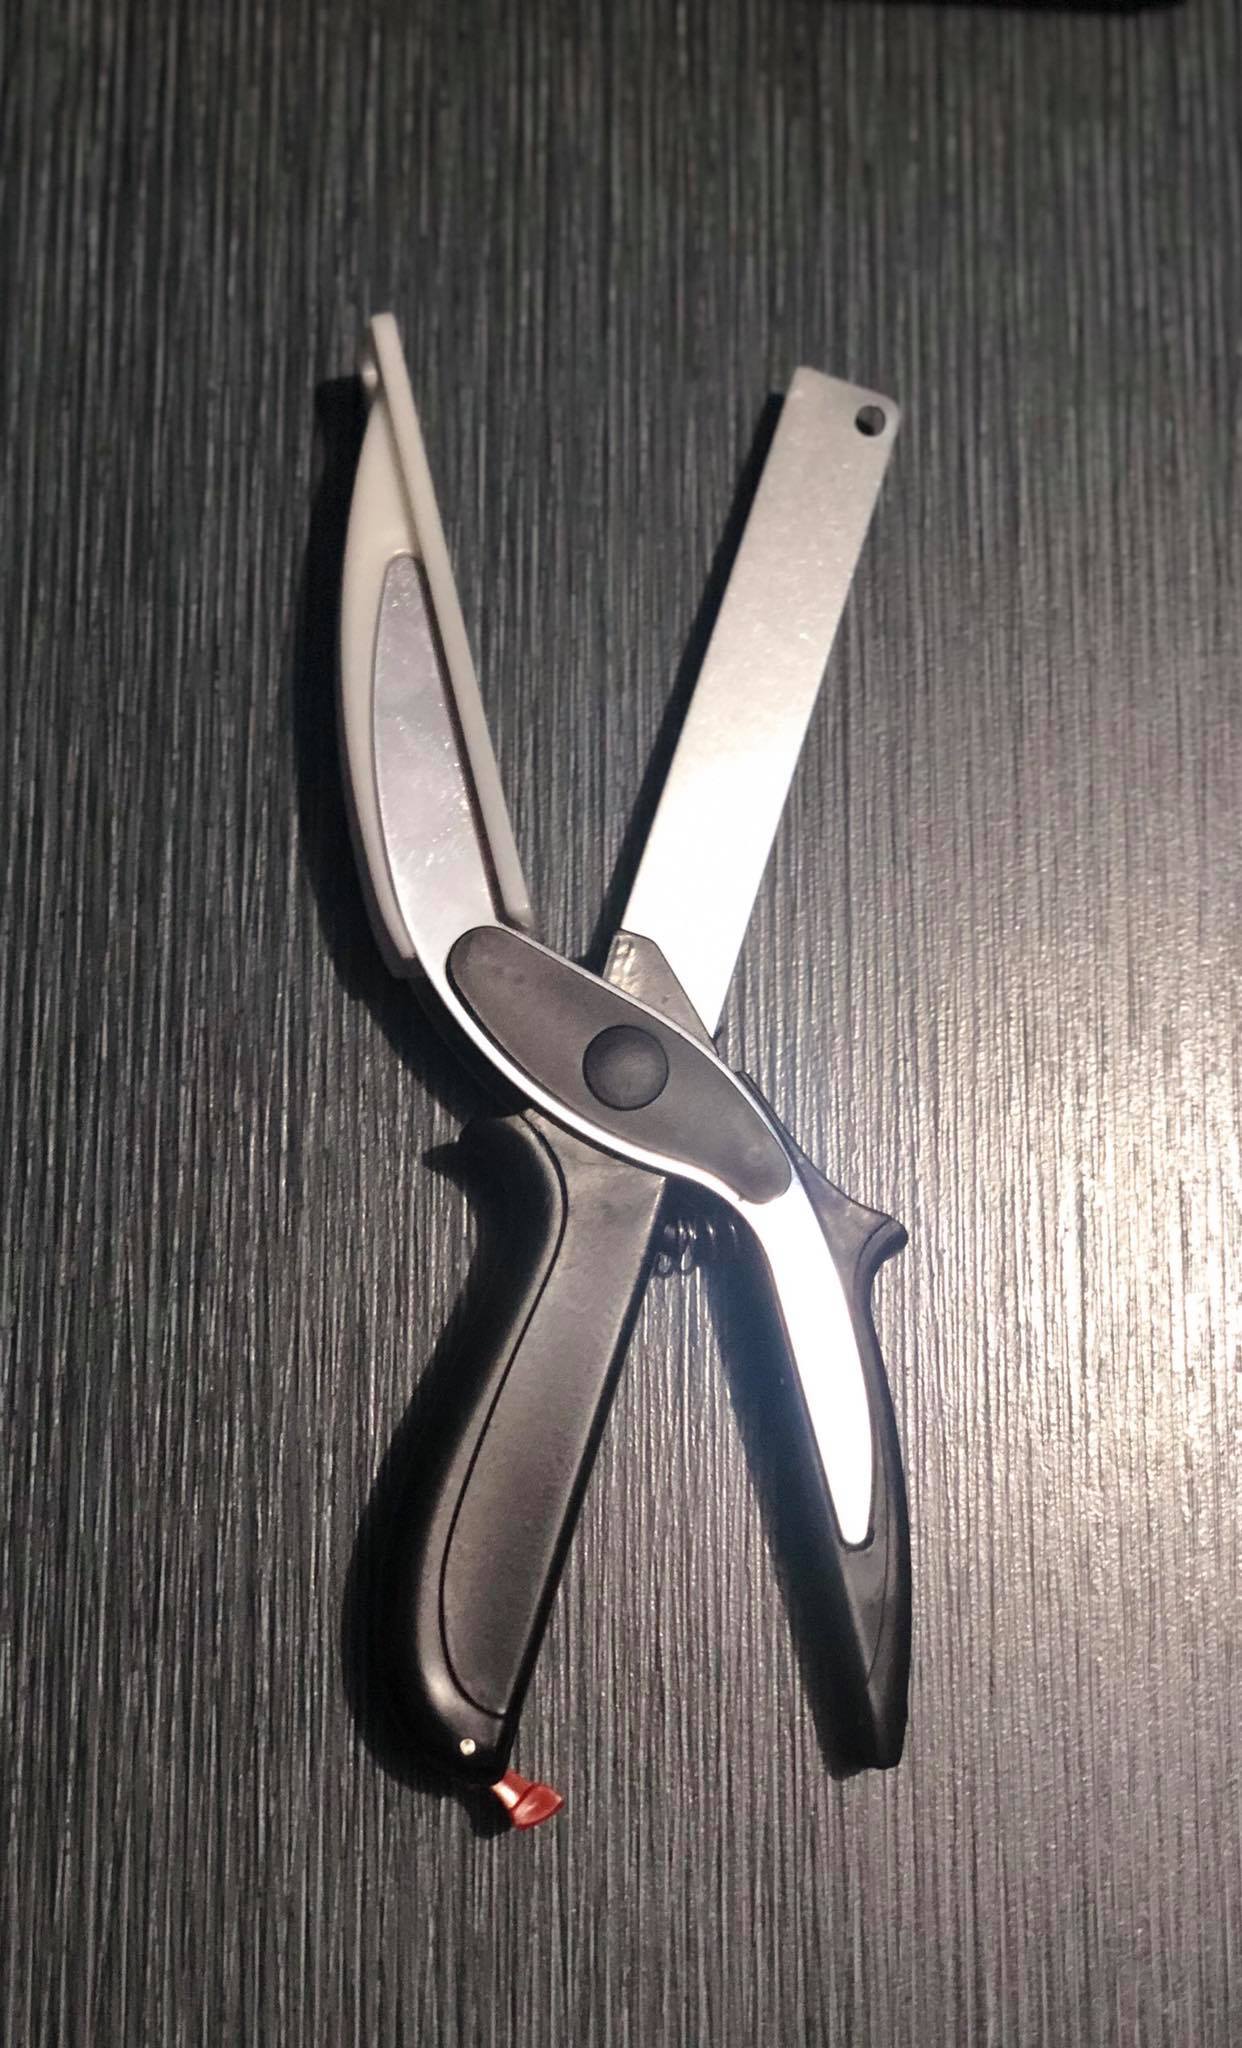 Clever Cutter 2-in-1 Knife & Cutting Board, Kitchen Food Chopper Sciss –  Alpha Fashion